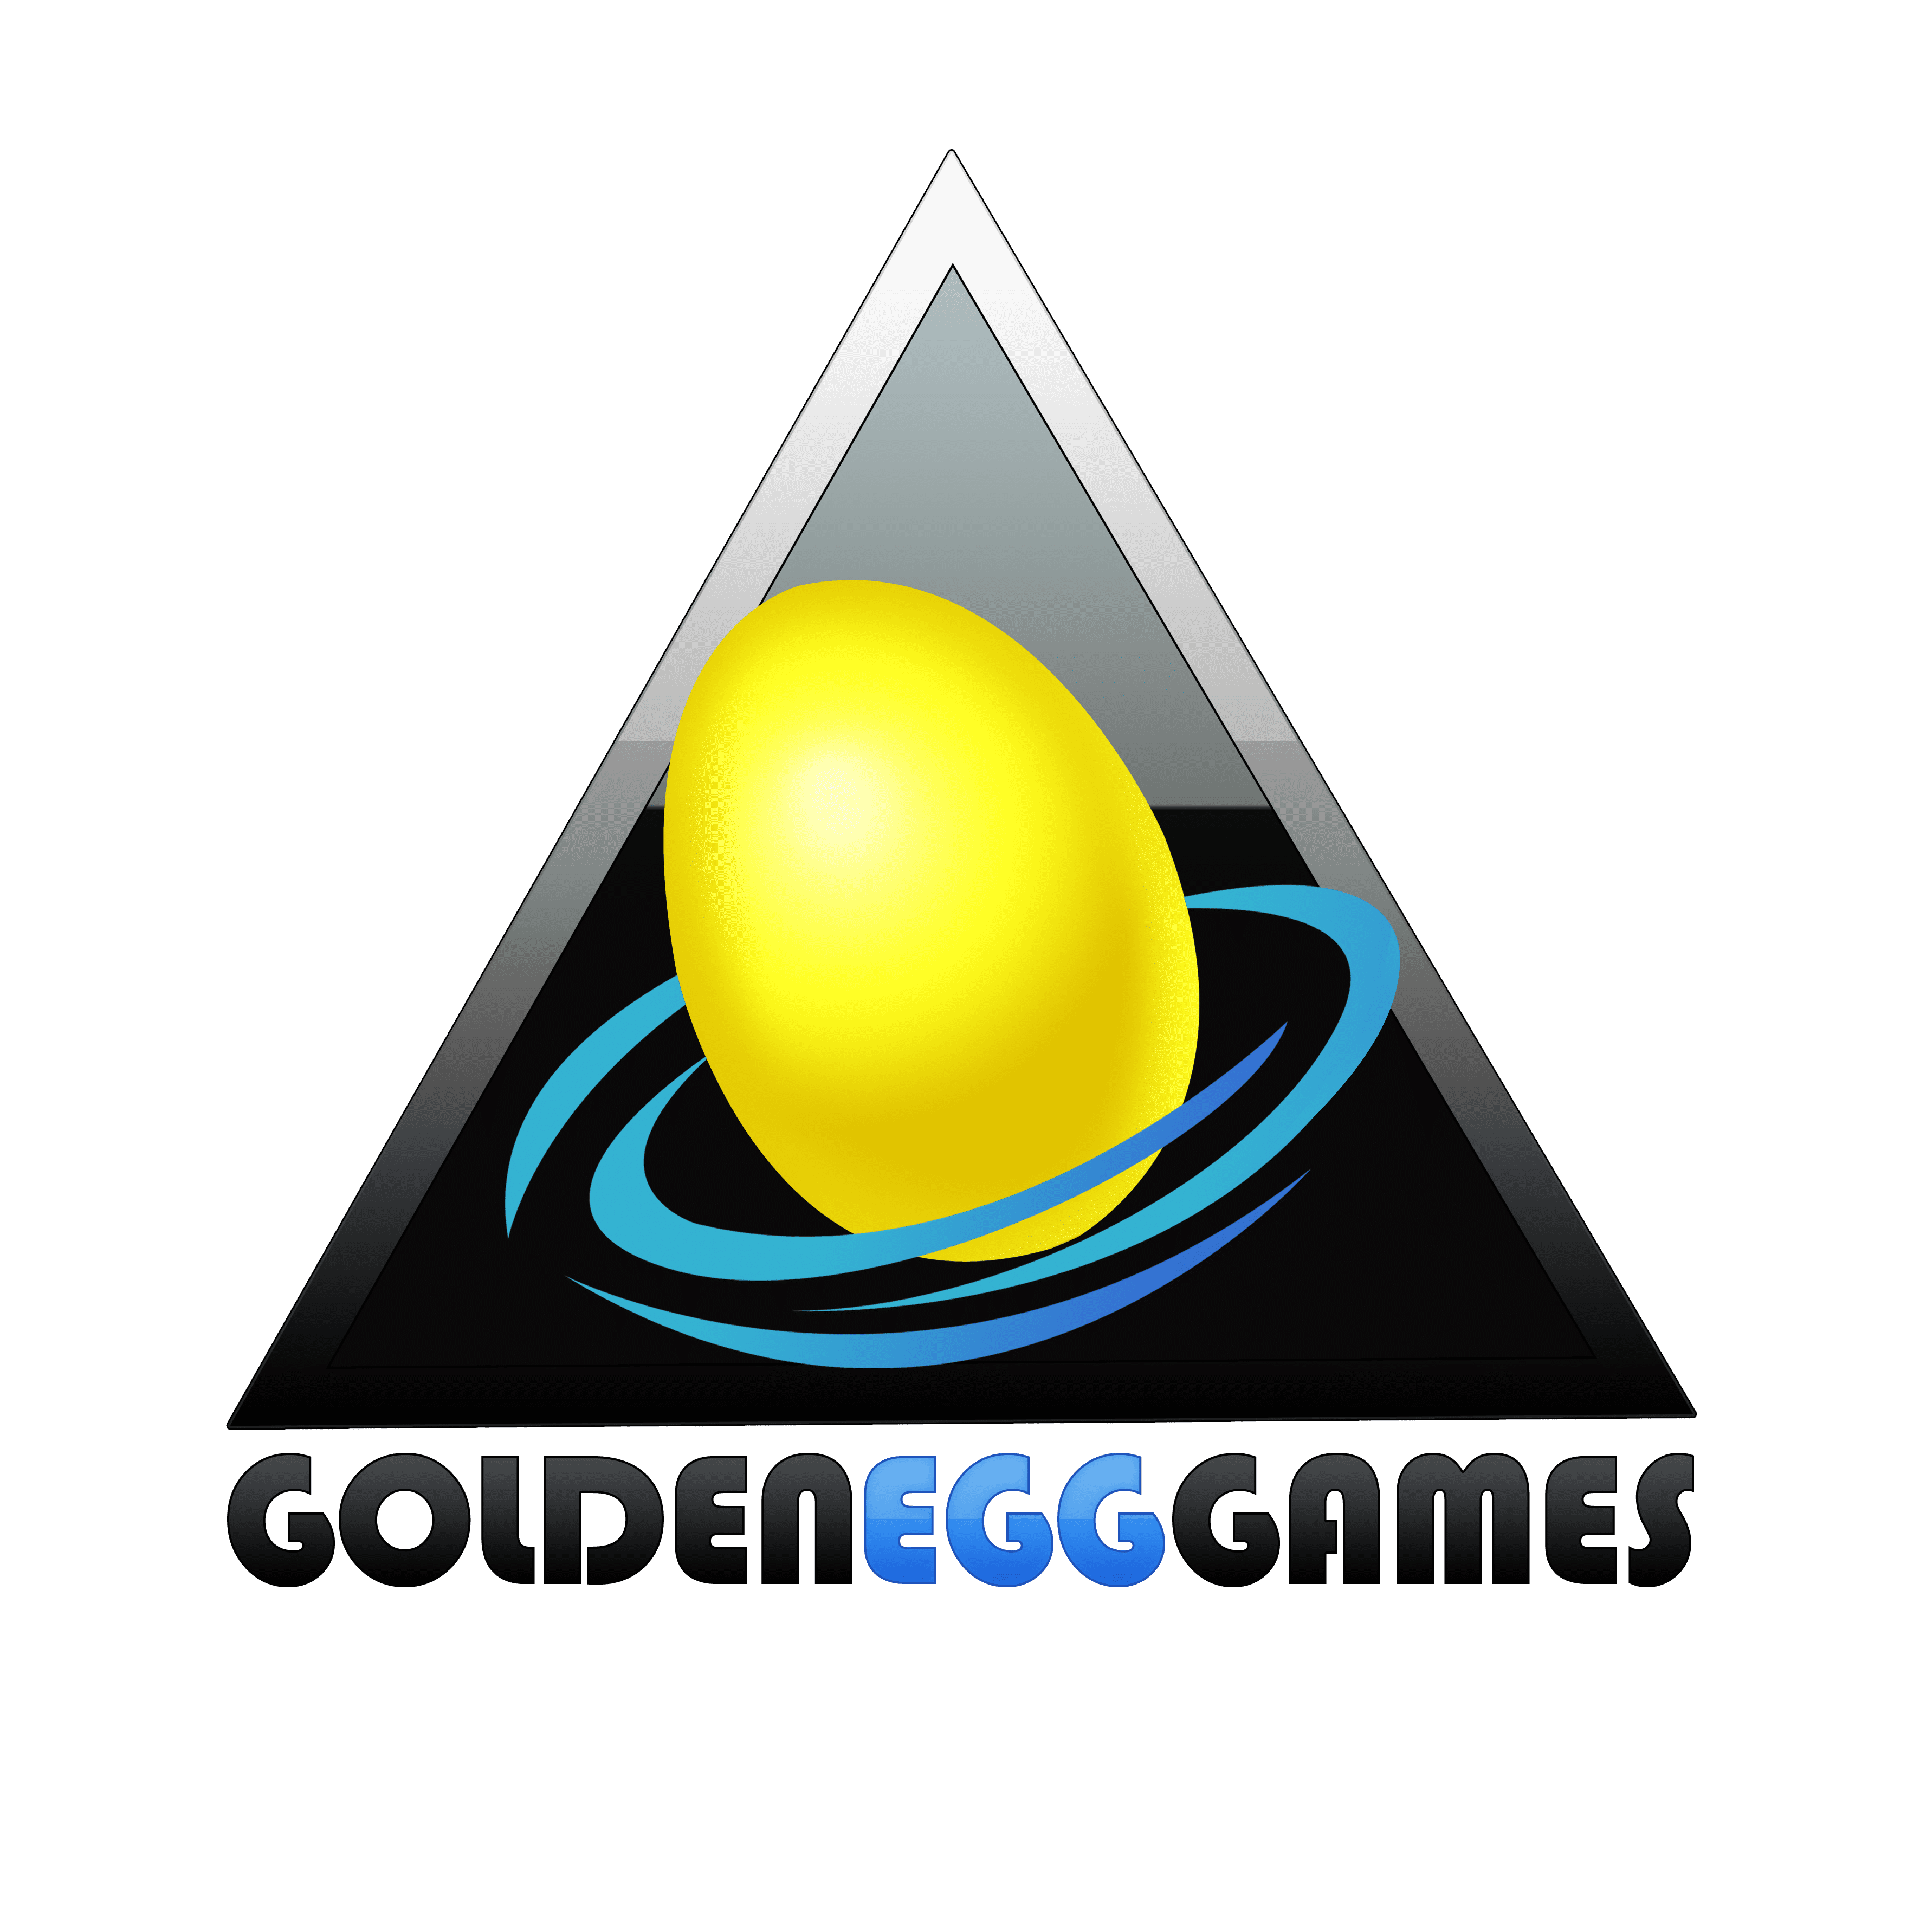 Brand: Golden Egg Games